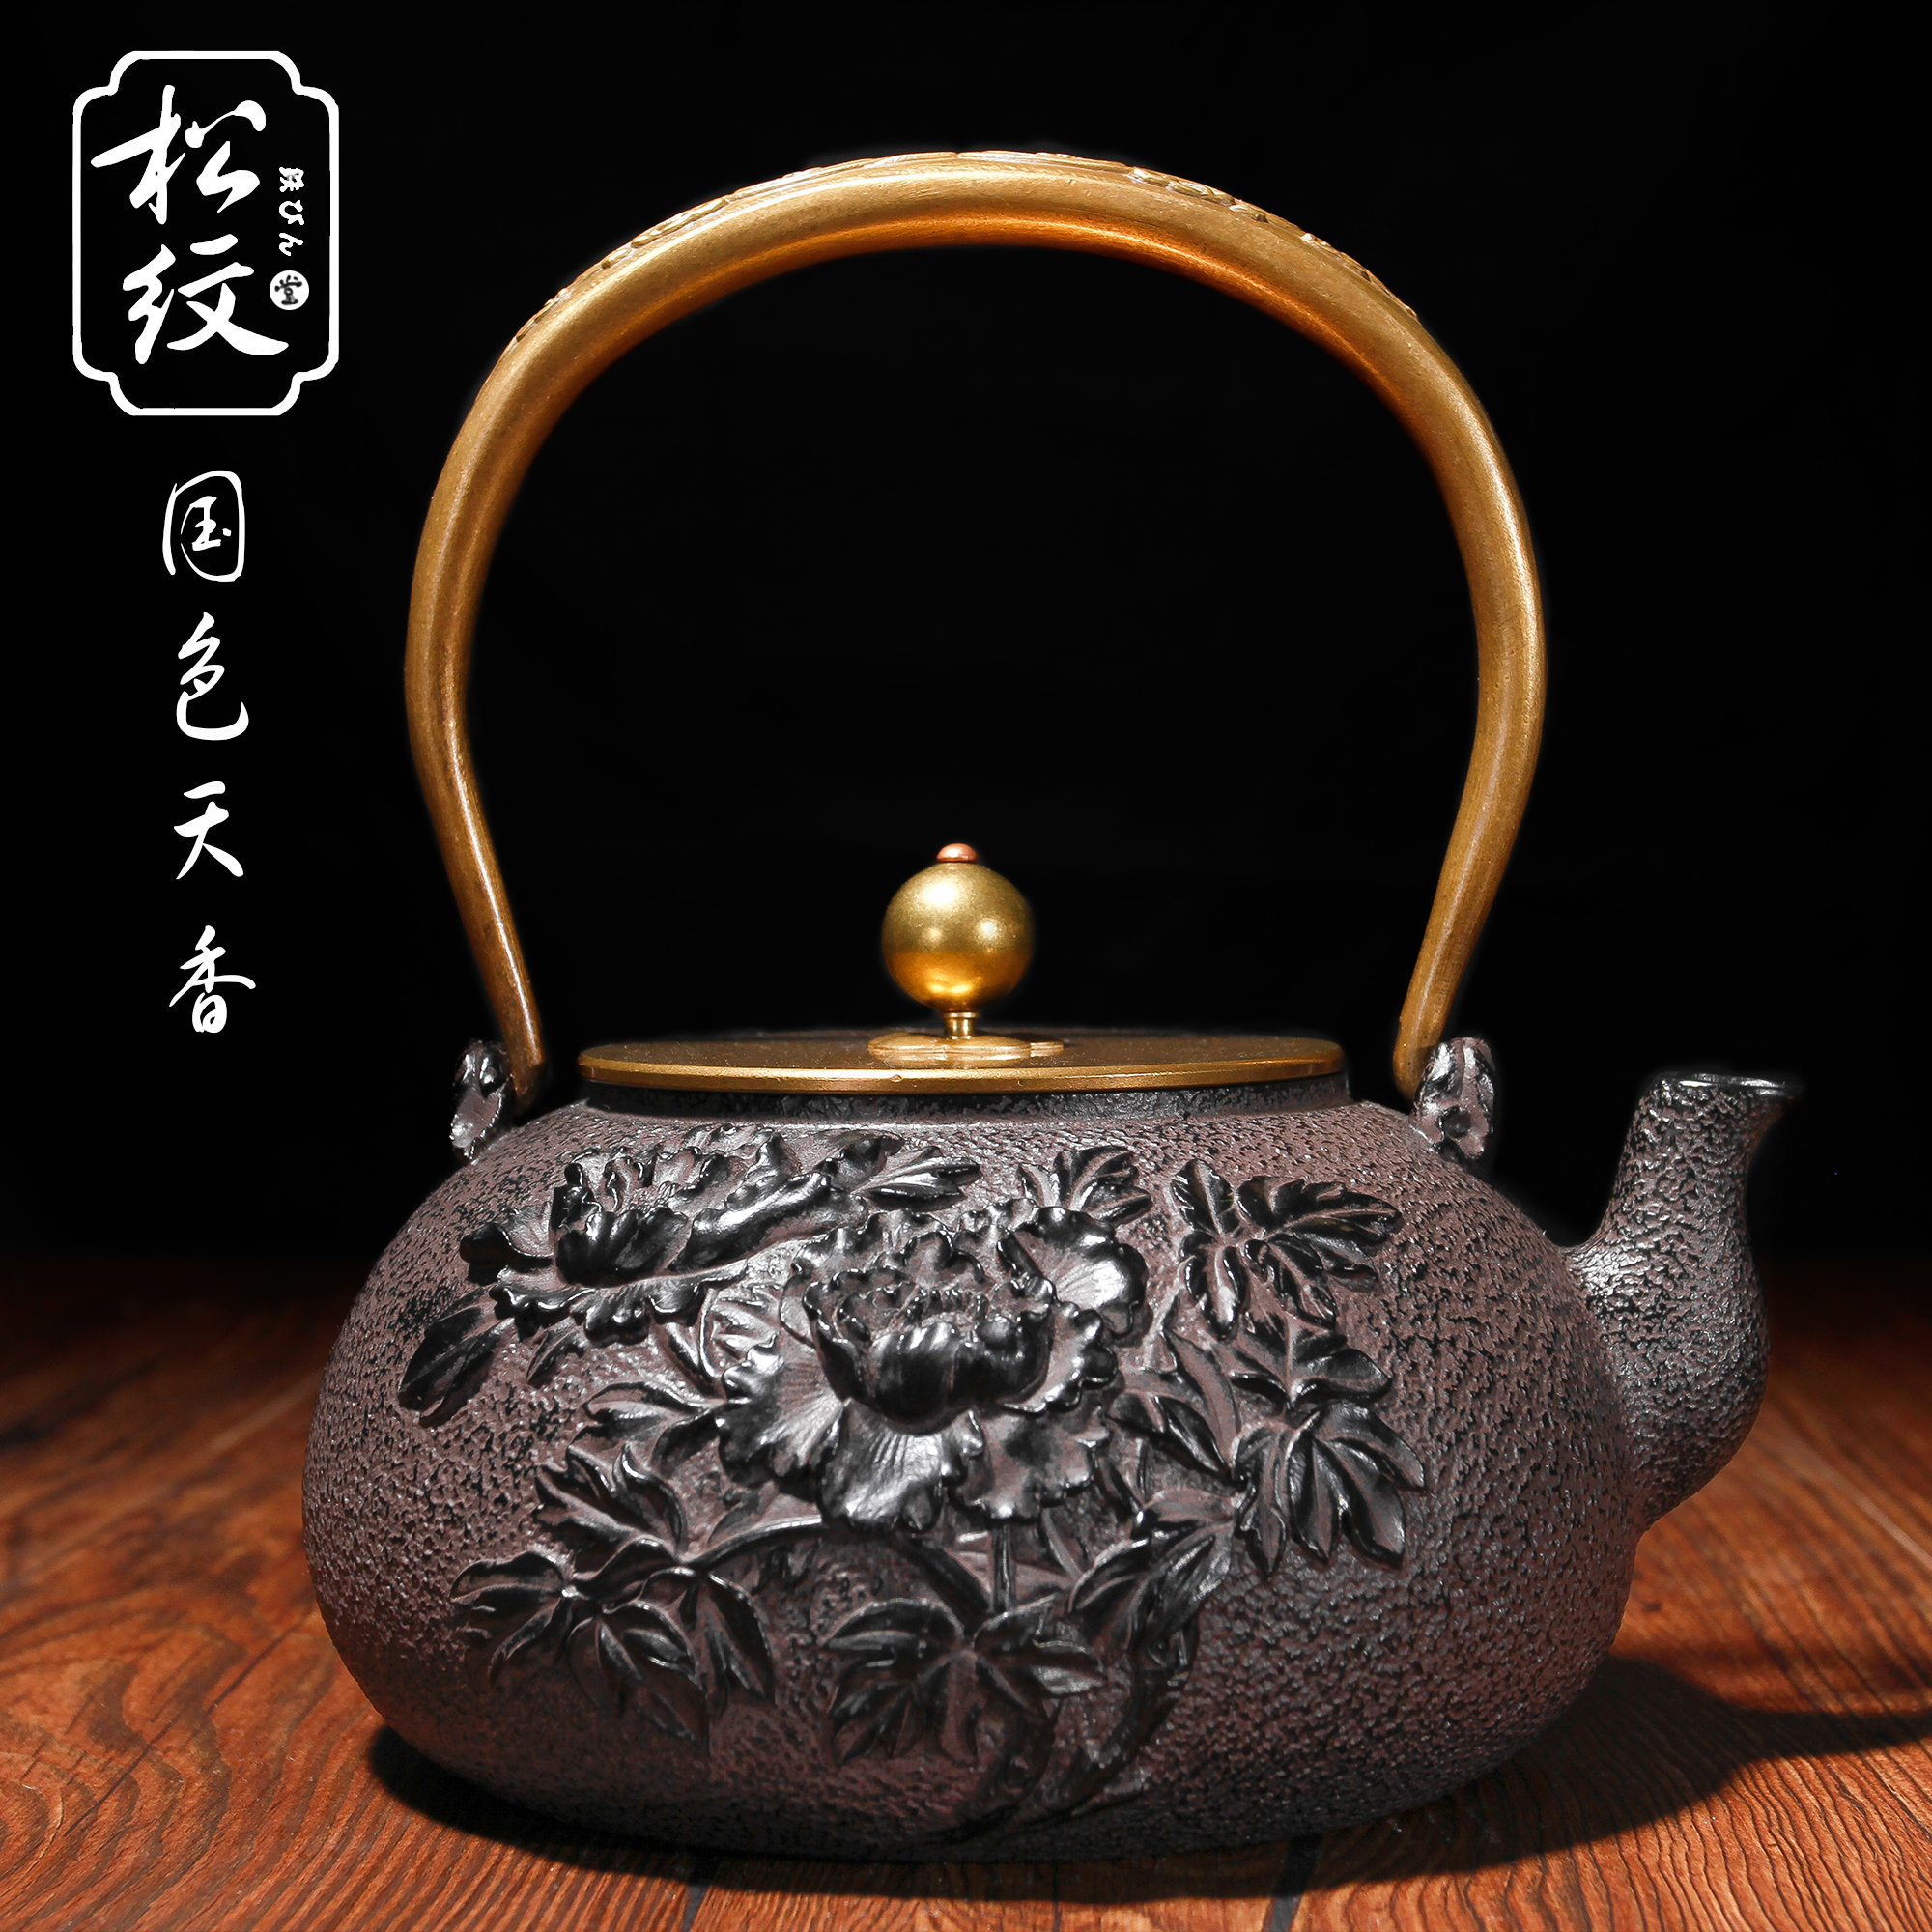 松纹堂正品出口日本老铁壶无涂层铸铁壶铜盖养身煮茶壶全手工包邮折扣优惠信息